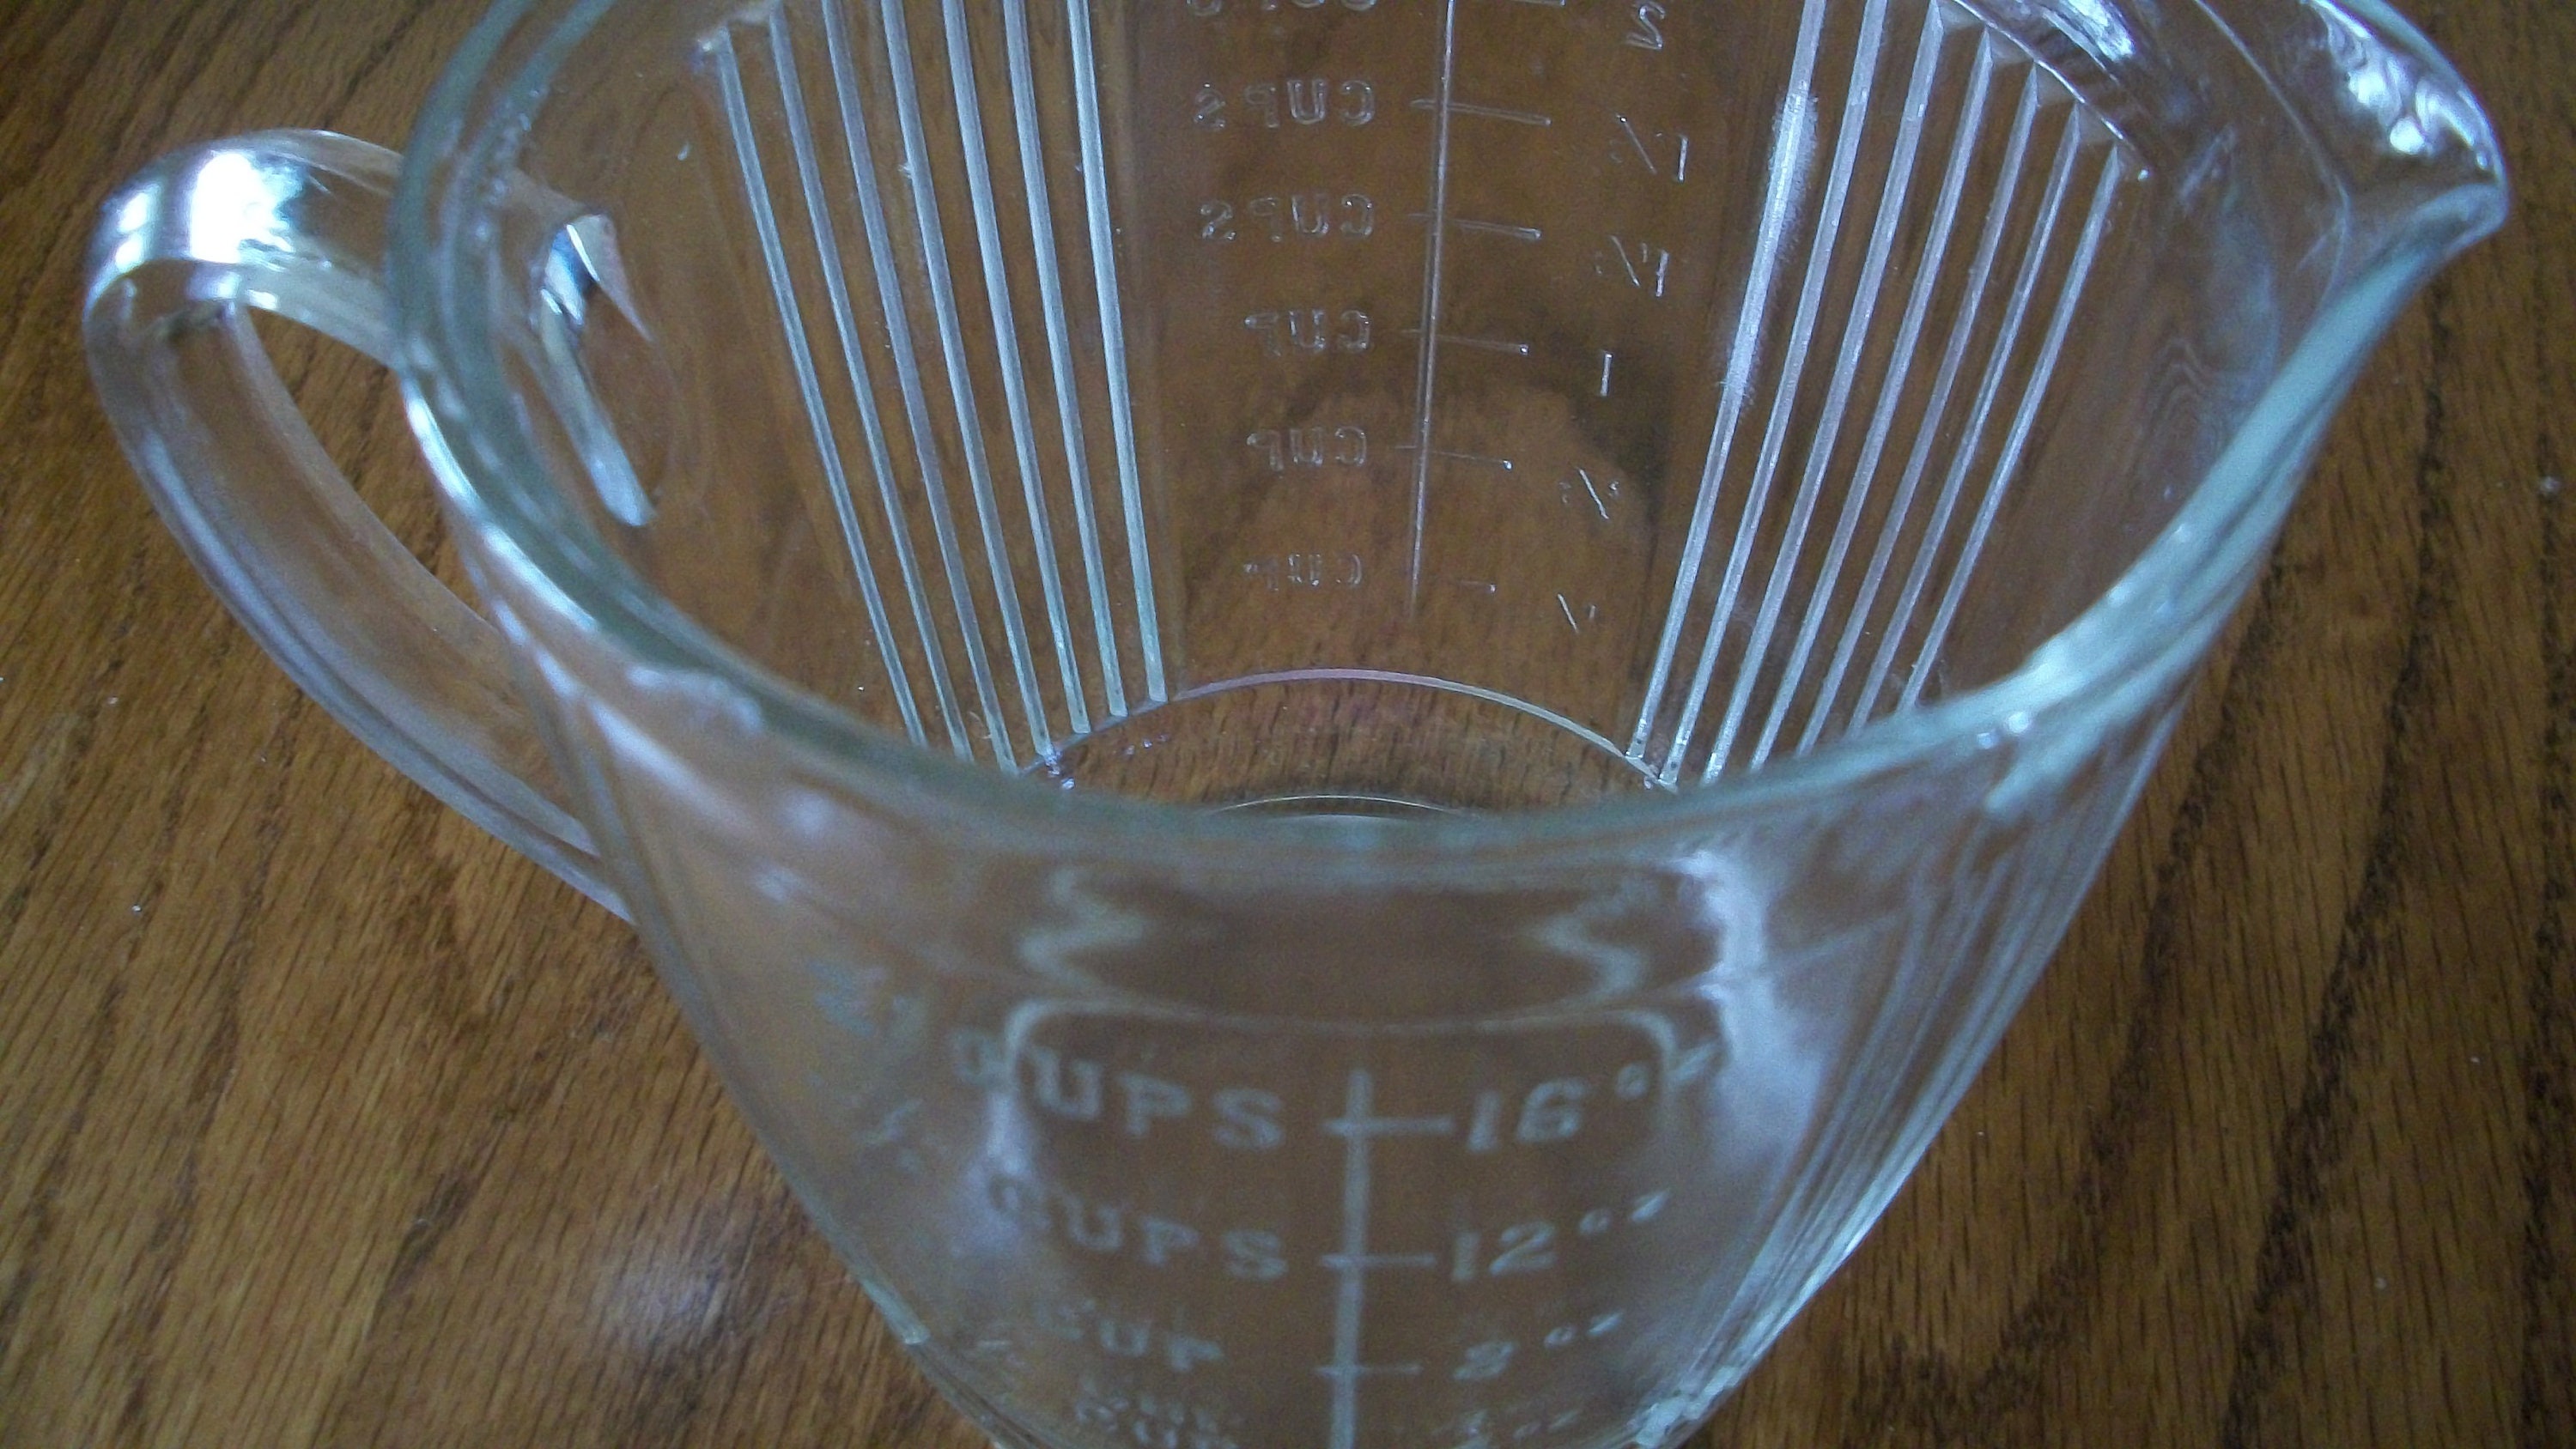 Vintage Aluminum 2 Cup Measuring Cup Embossed Marker Lines w/Pour Spouts